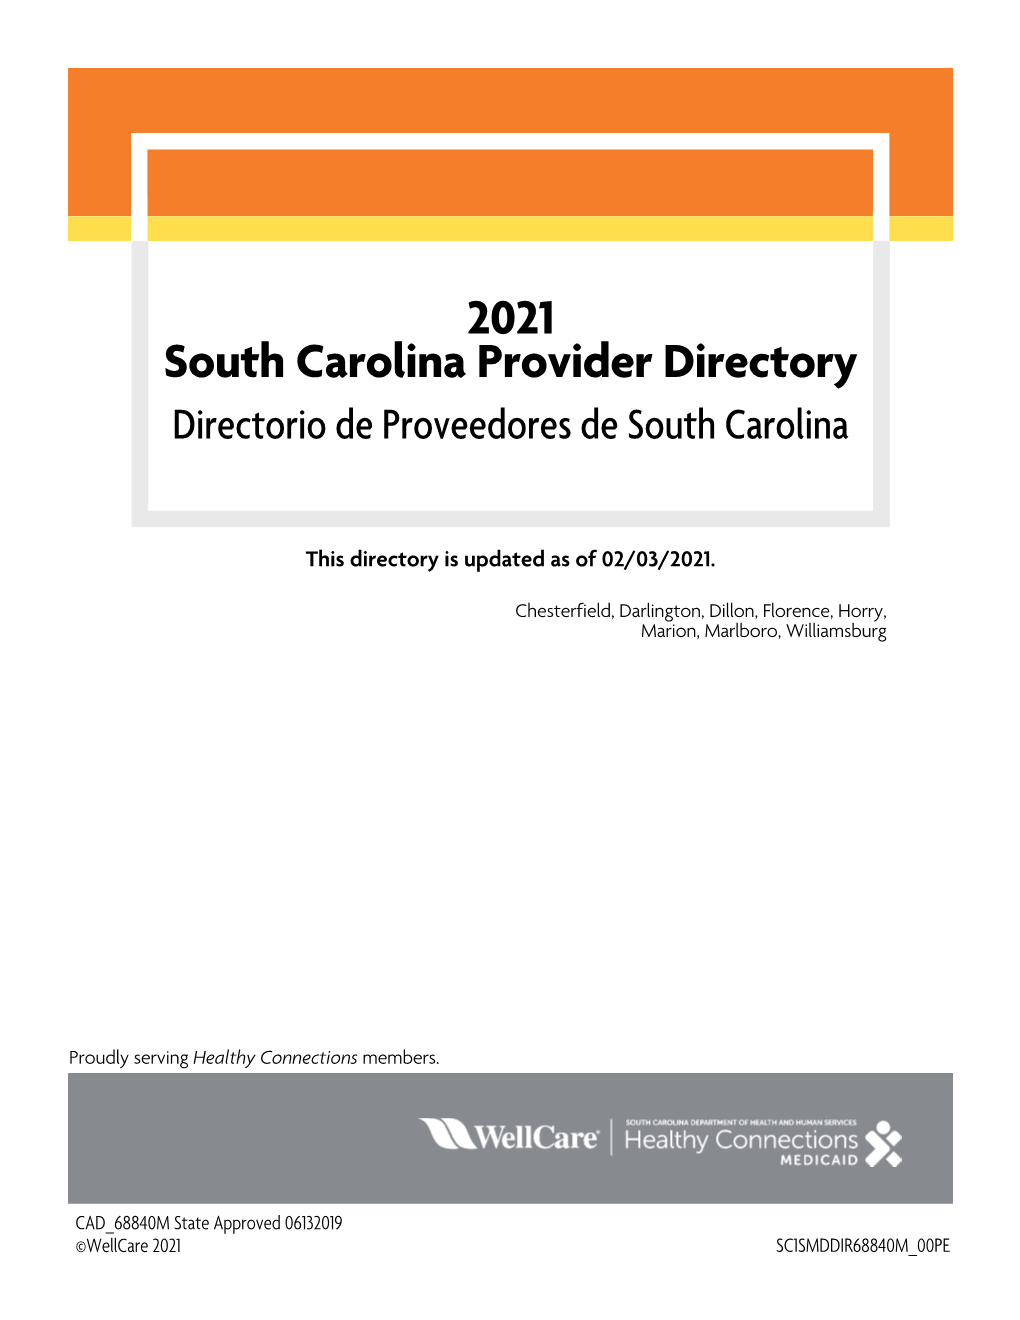 2021 South Carolina Provider Directory Directorio De Proveedores De South Carolina